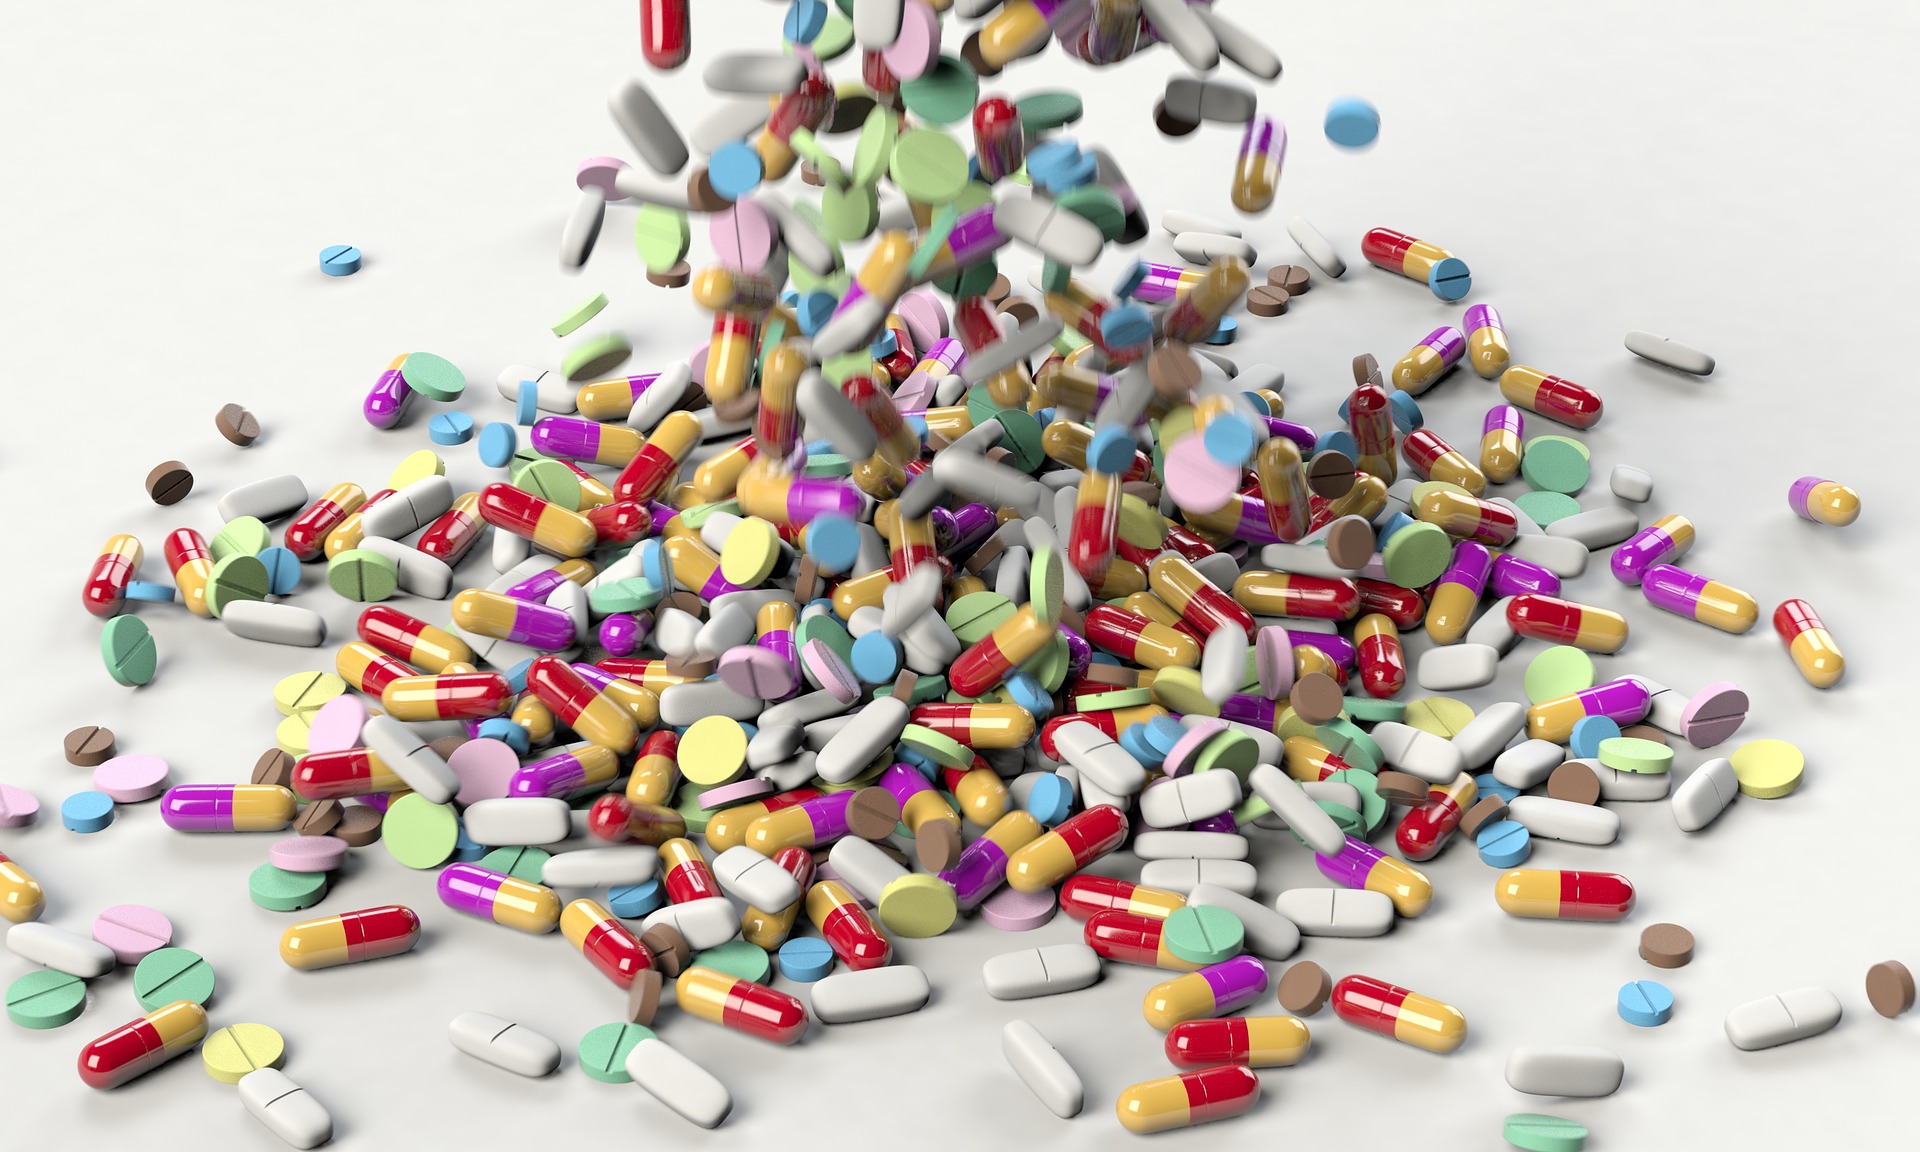 Estudio desmiente que el mayor uso de antibióticos esté relacionado con falta de conocimiento 